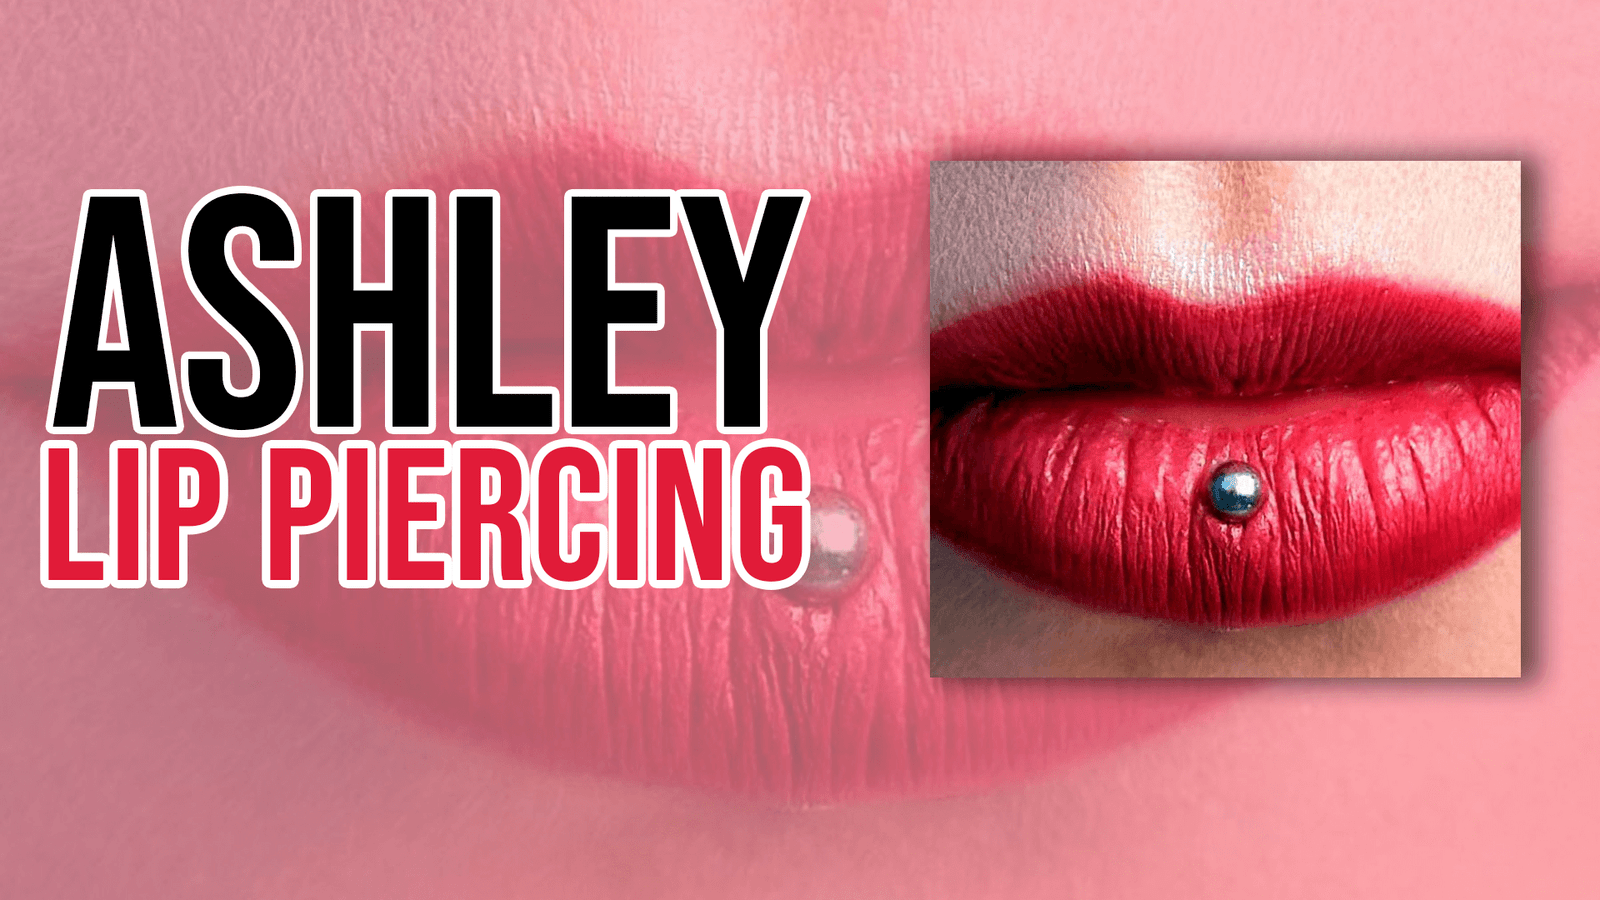 Ashley Lip Piercing